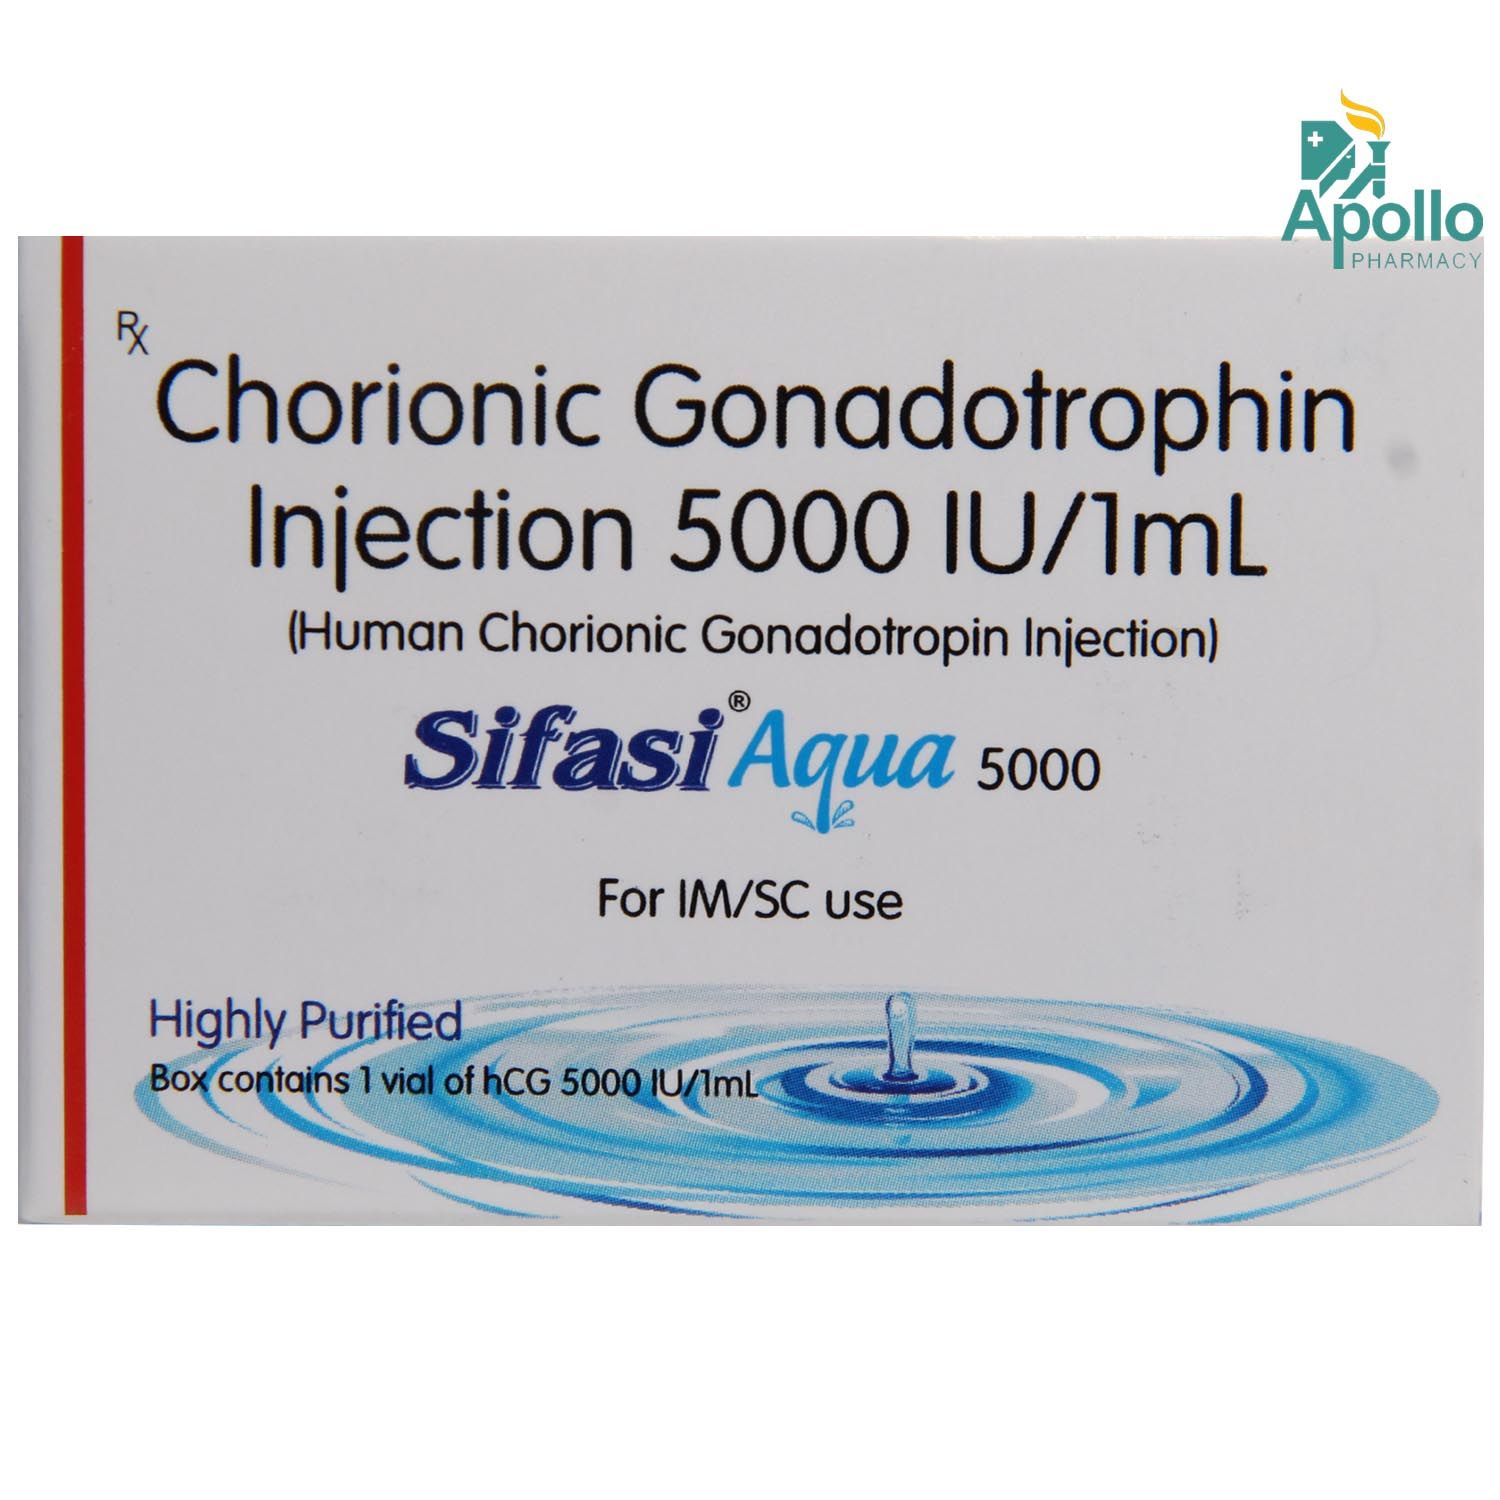 Buy Sifasi Aqua 5000 Injection 1 ml Online